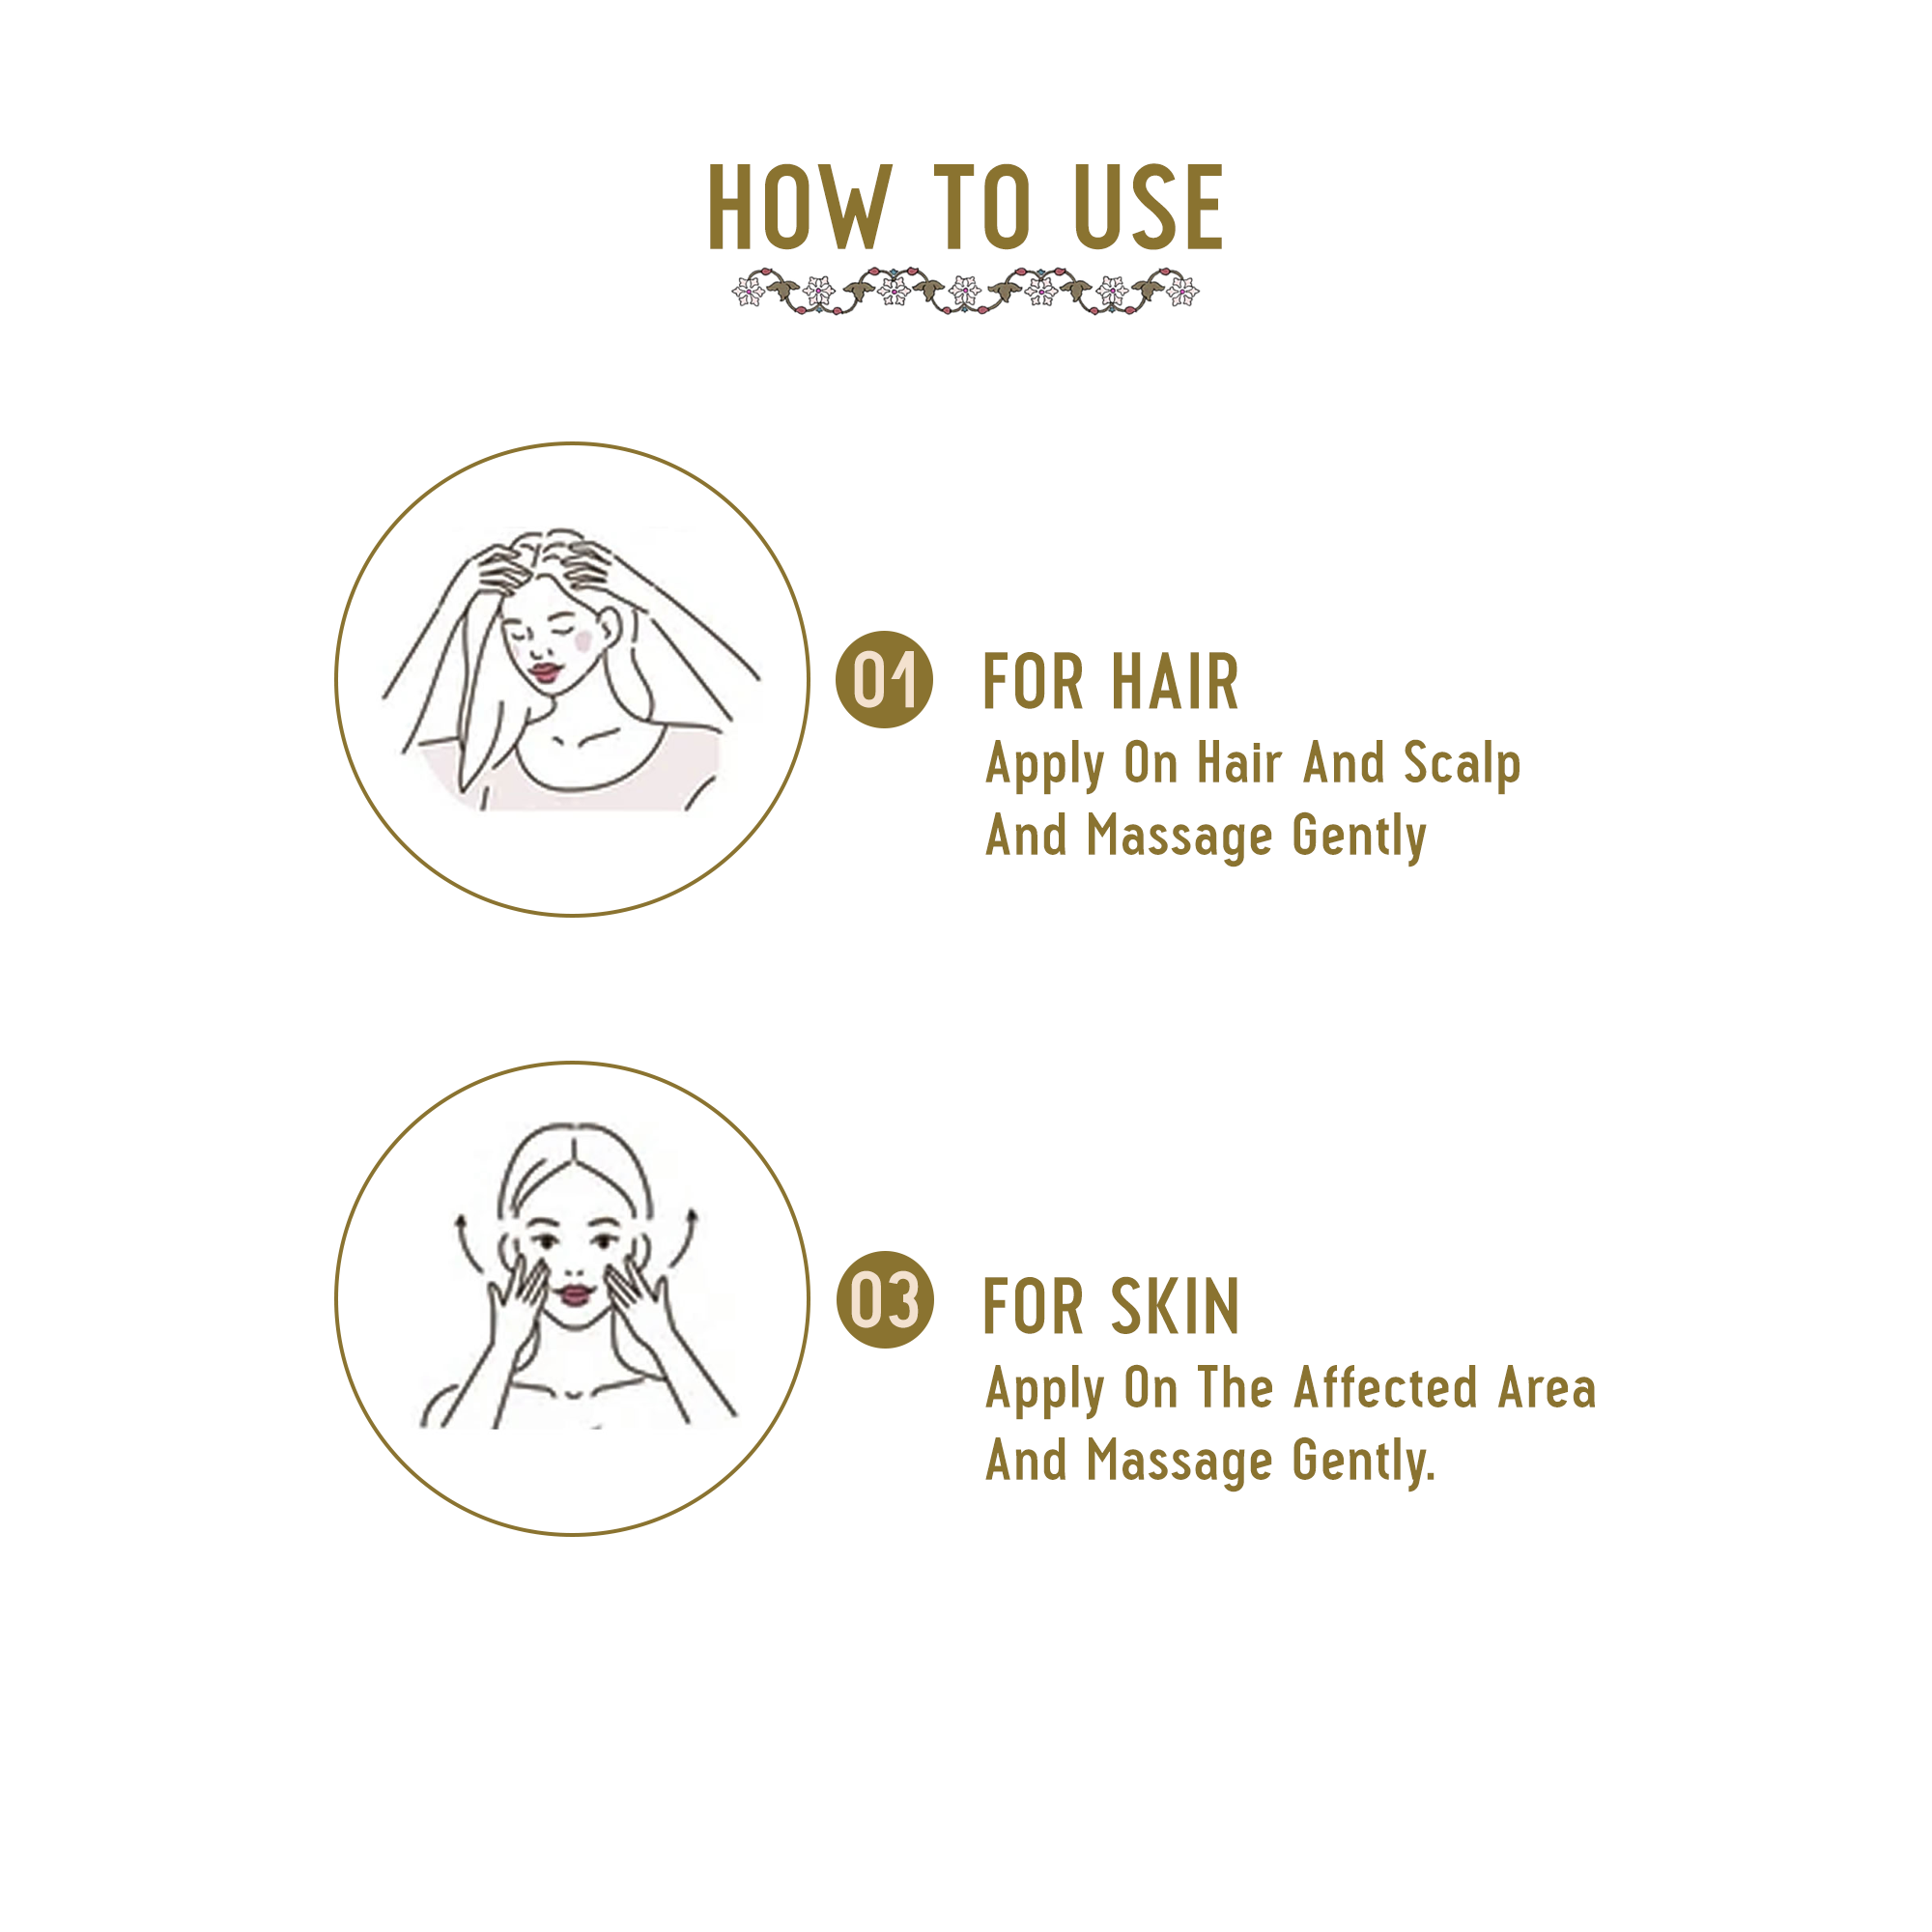 How to use Argan hair oil